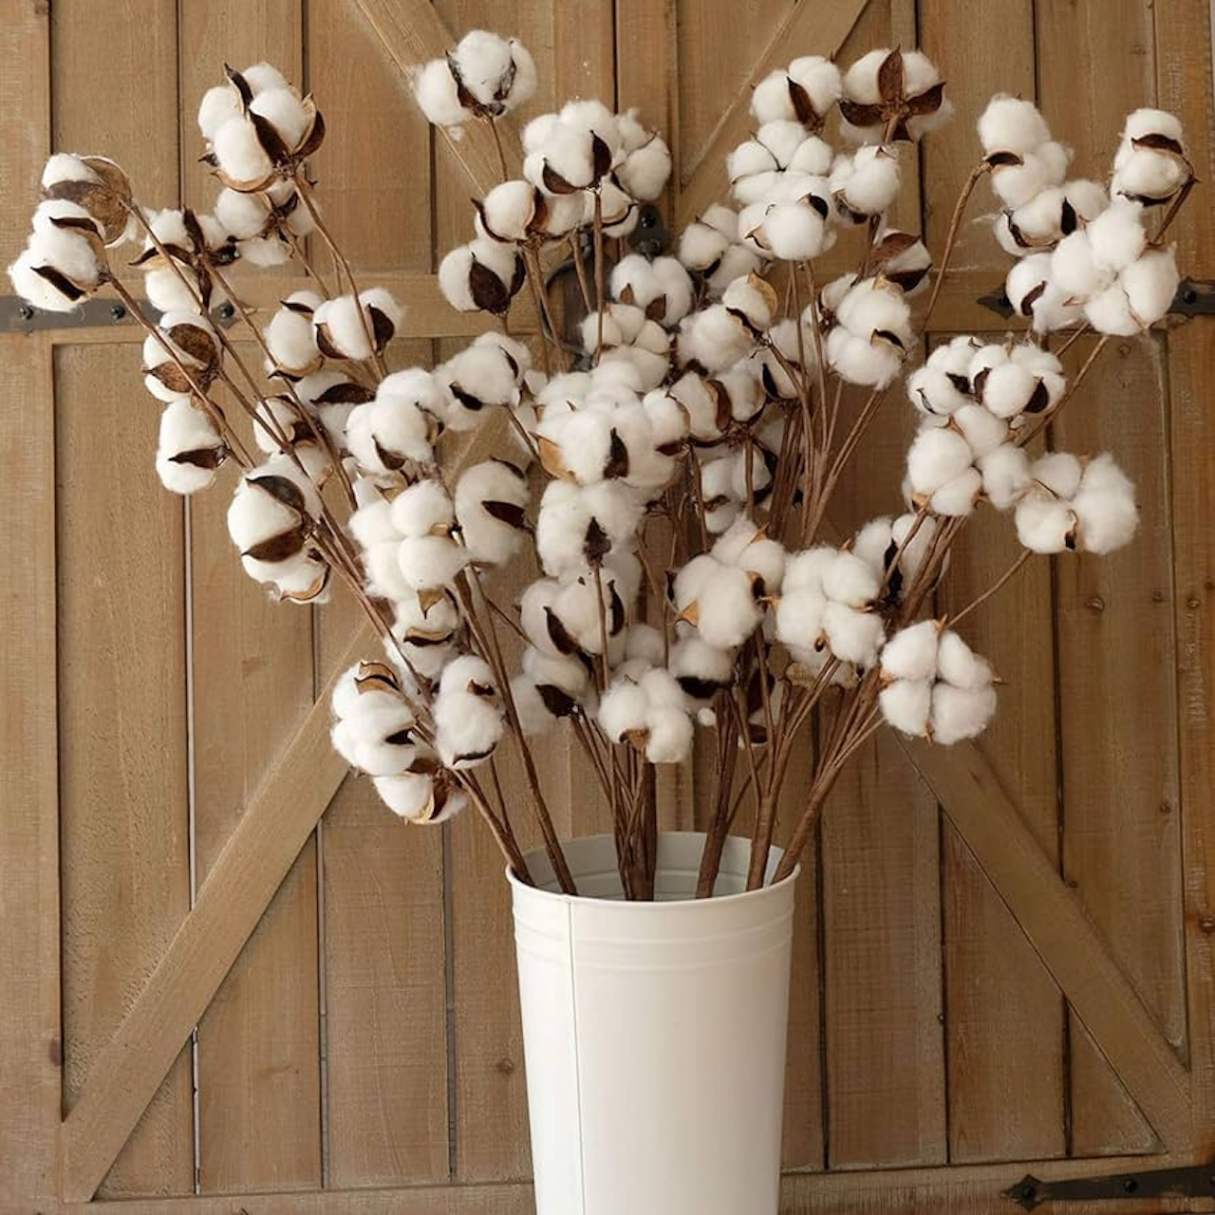 How Long Do Cotton Stems Last In Floral Arrangements